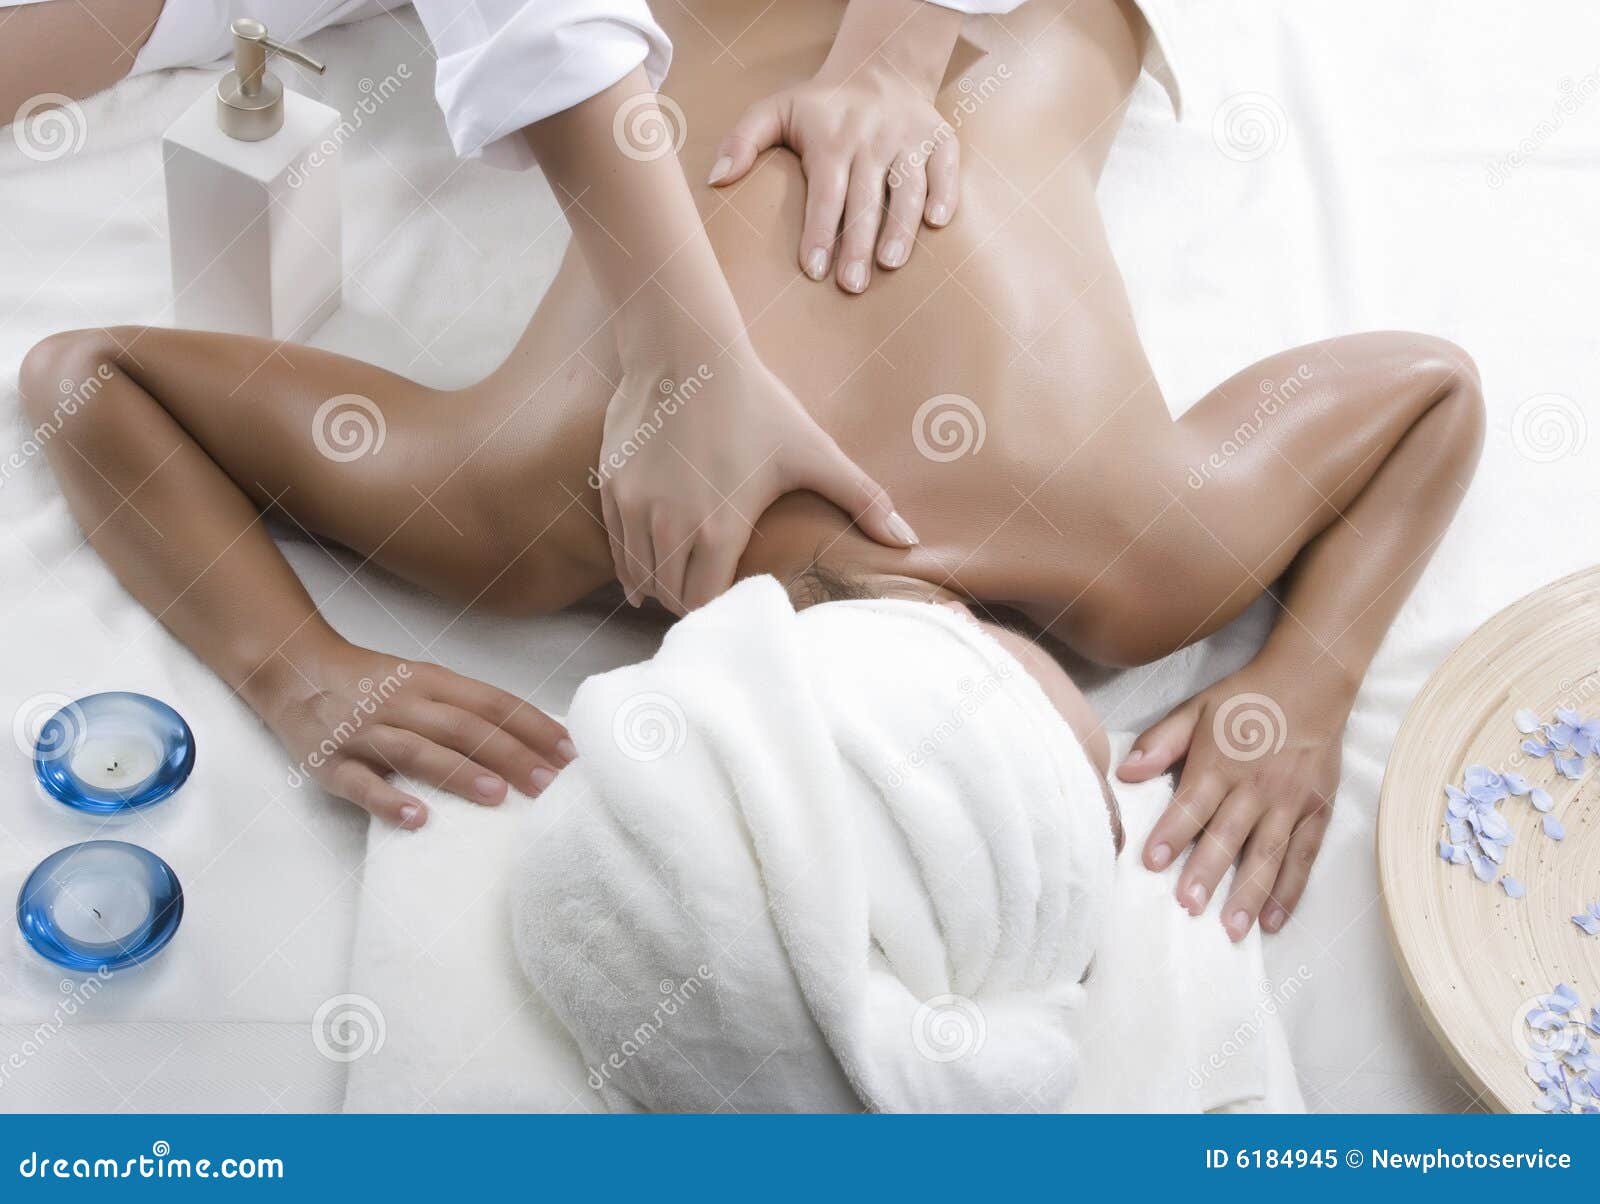 4 Hands Massage, Worth It?